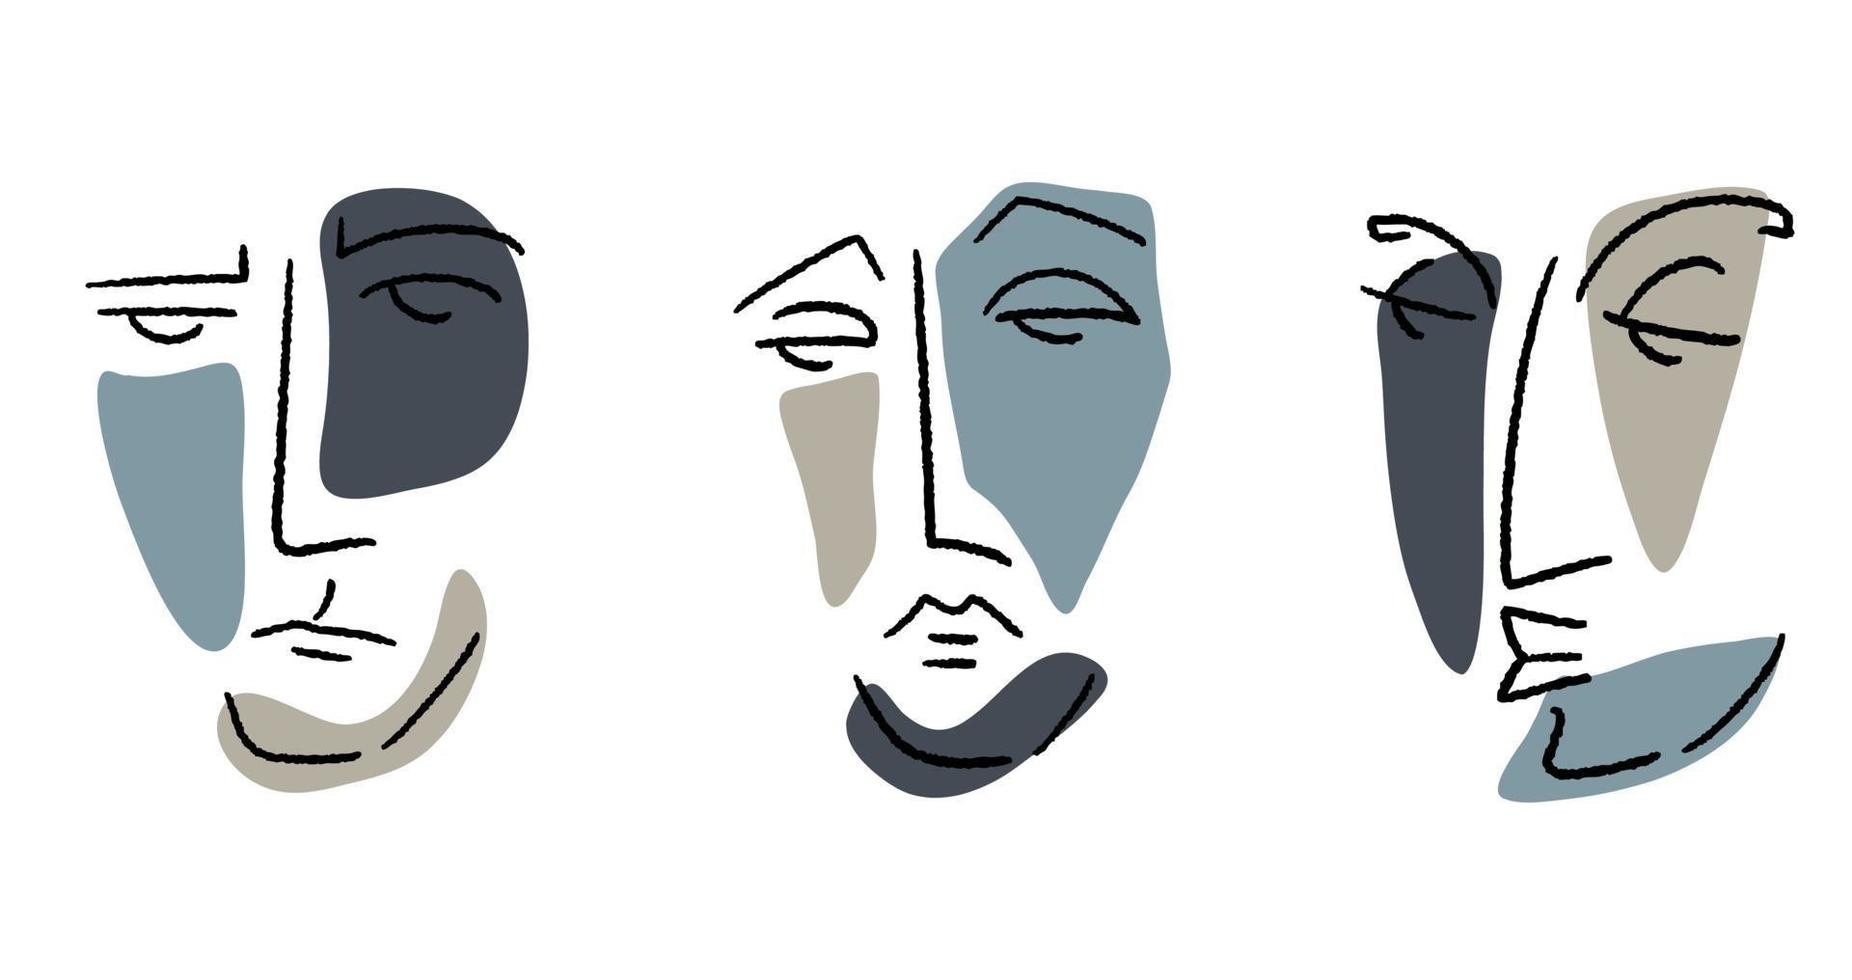 Reihe von modernen abstrakten Gesichtern. vektor